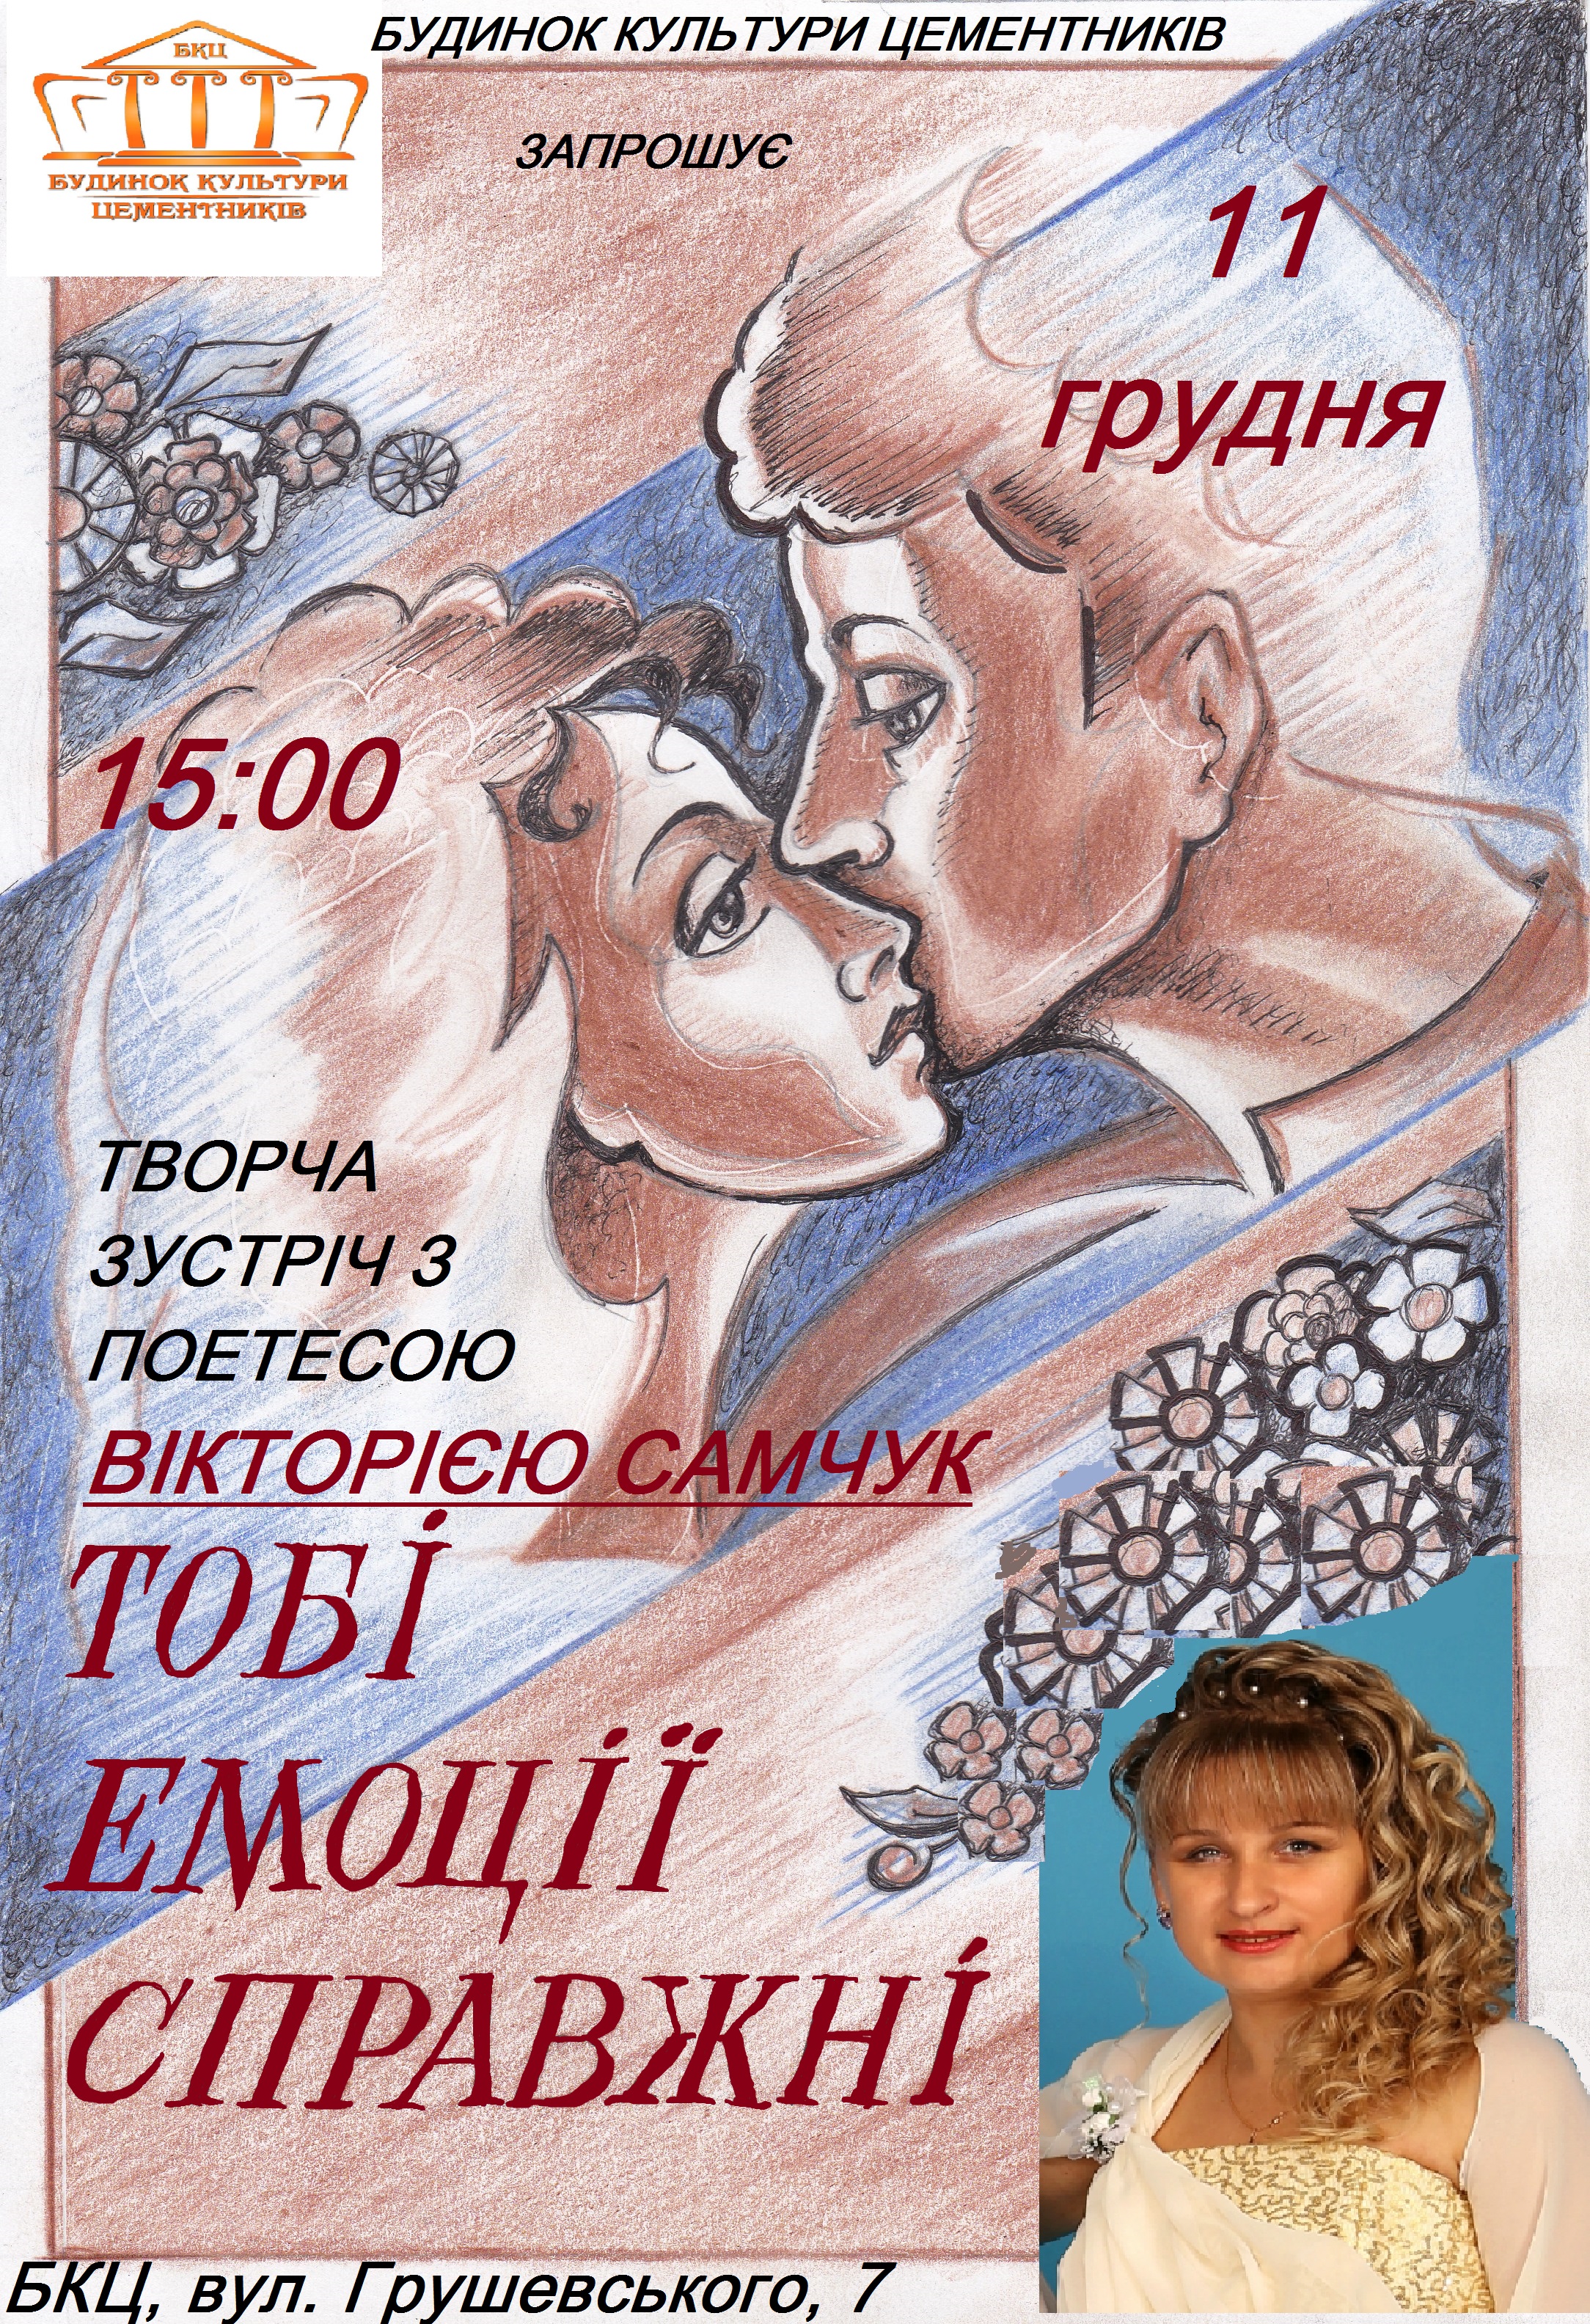 Концерт Вікторії Самчук «Тобі емоції справжні»